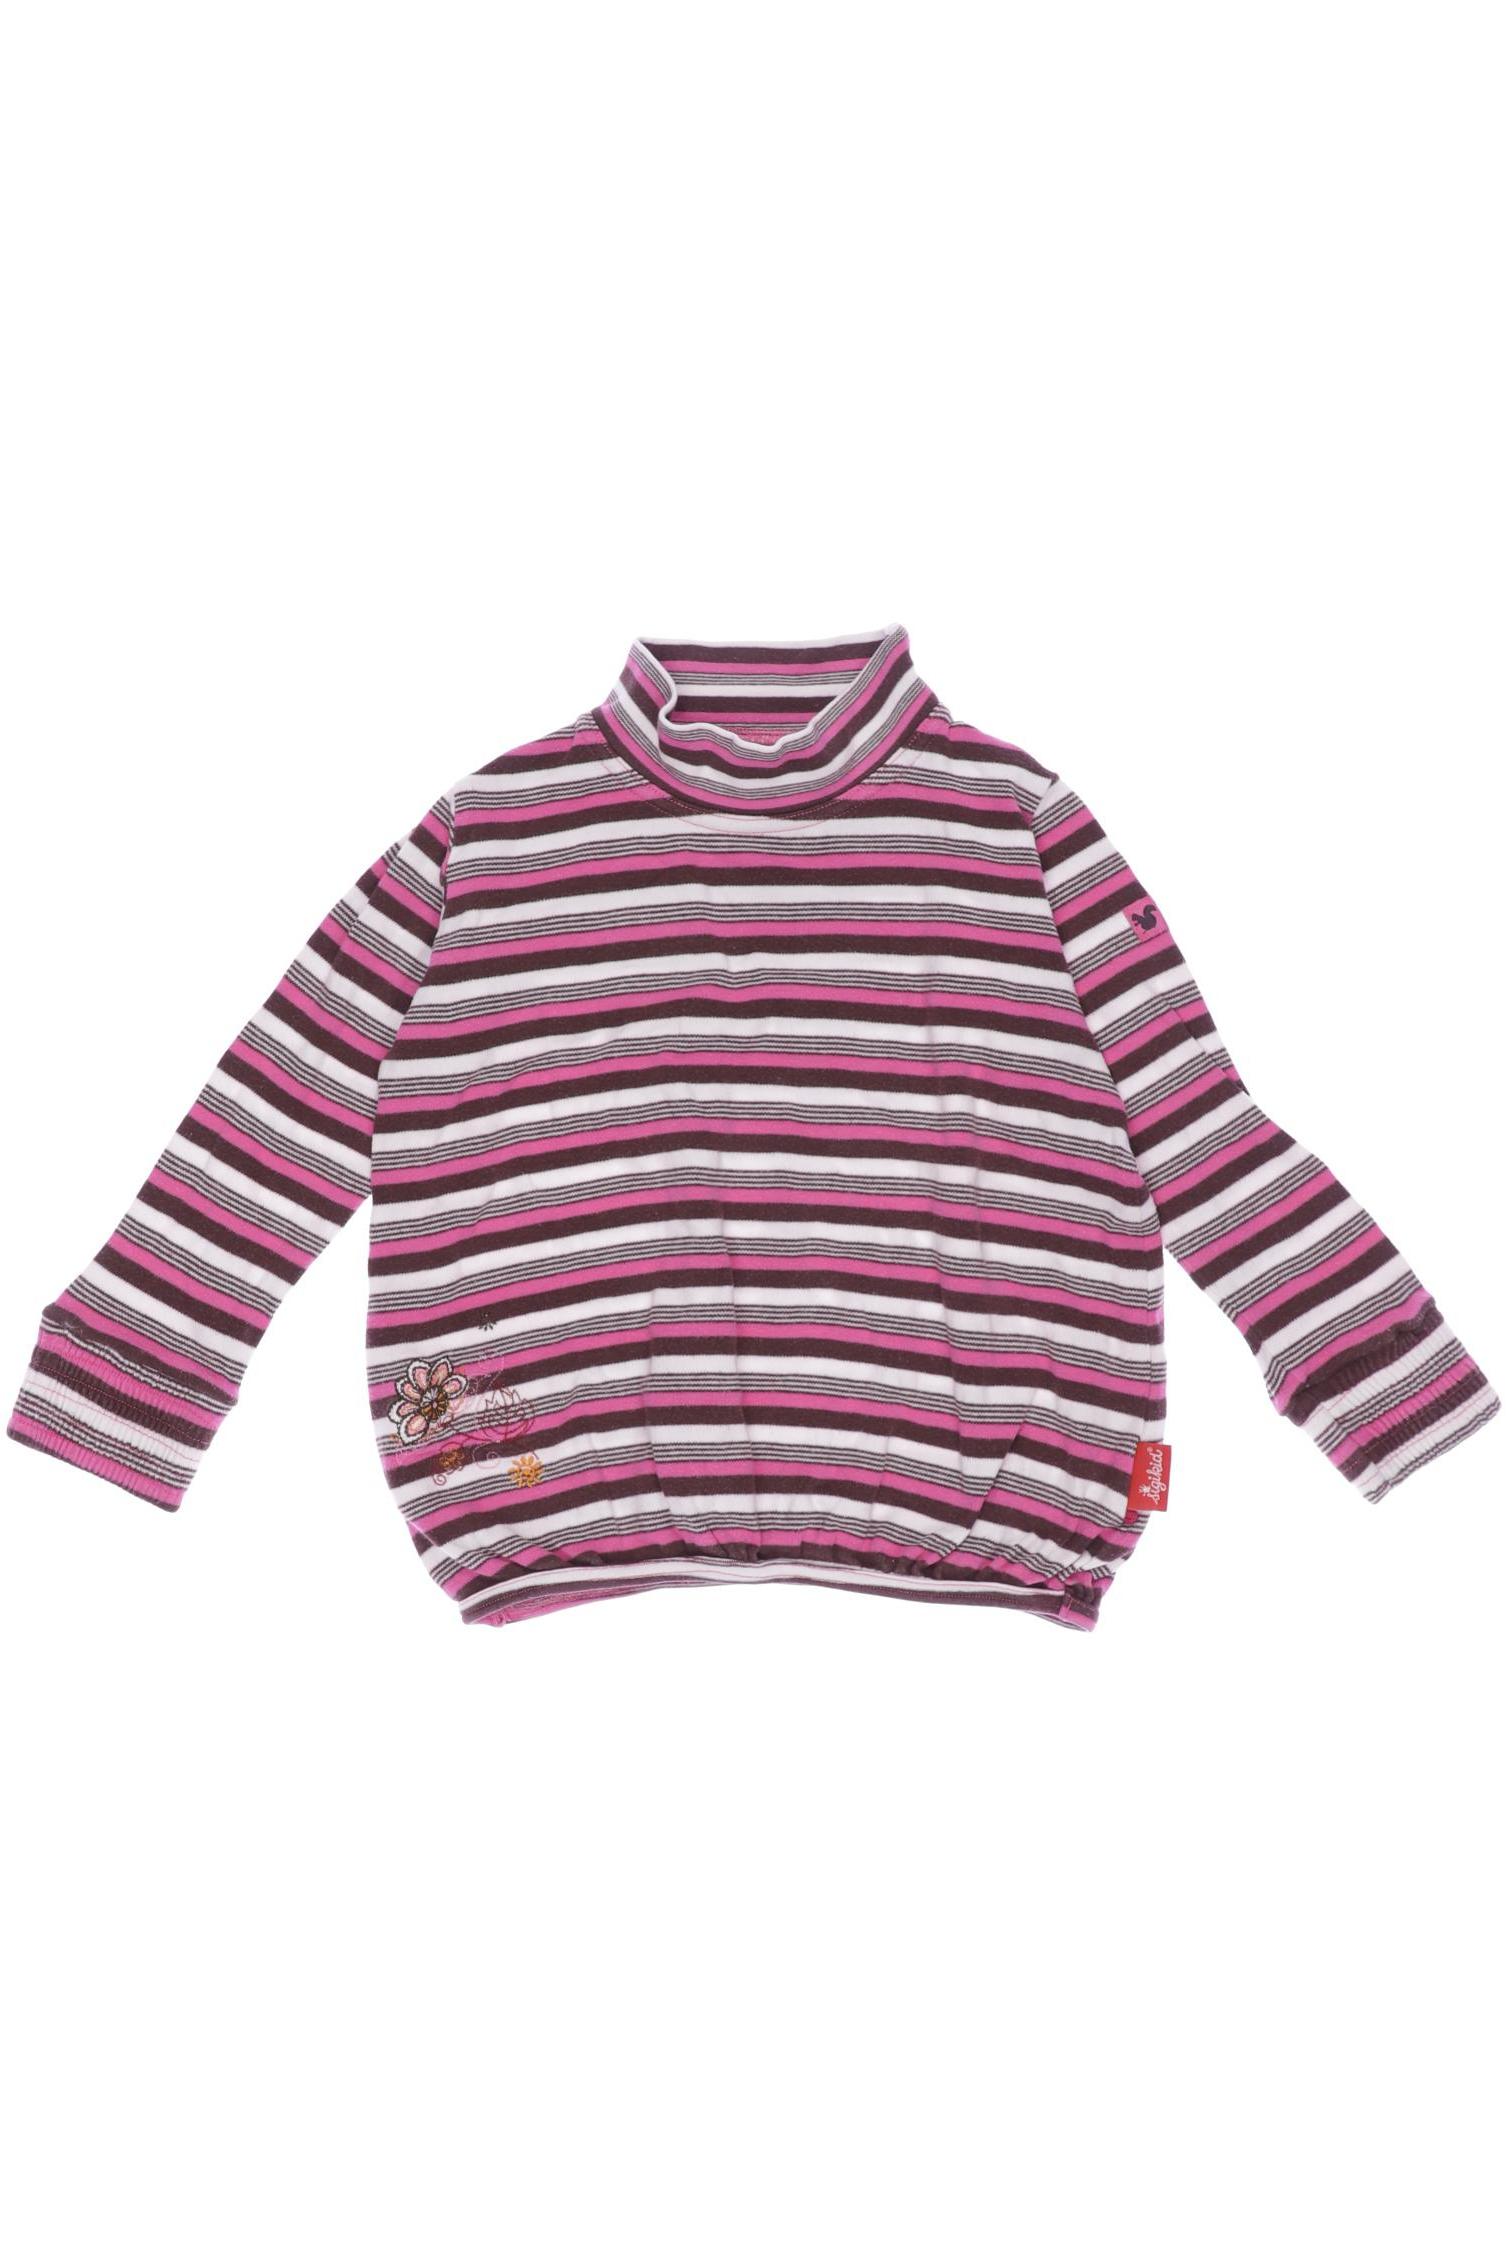 sigikid Damen Pullover, pink, Gr. 104 von sigikid